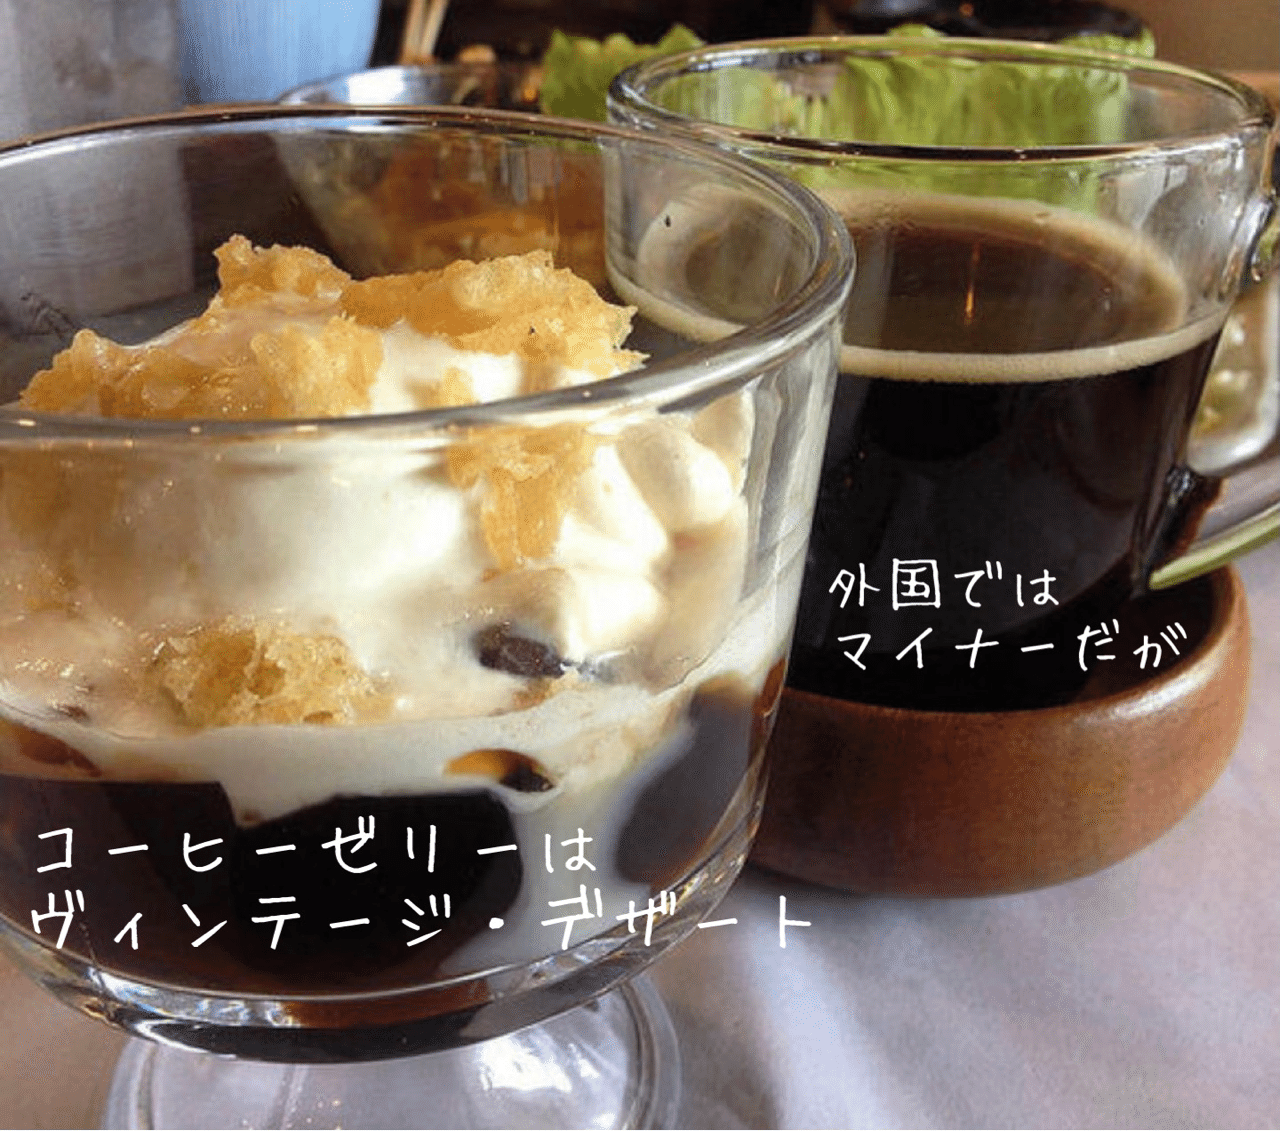 外国人が食べてみたい日本の美味 2 コーヒーゼリー ノリノリ Note